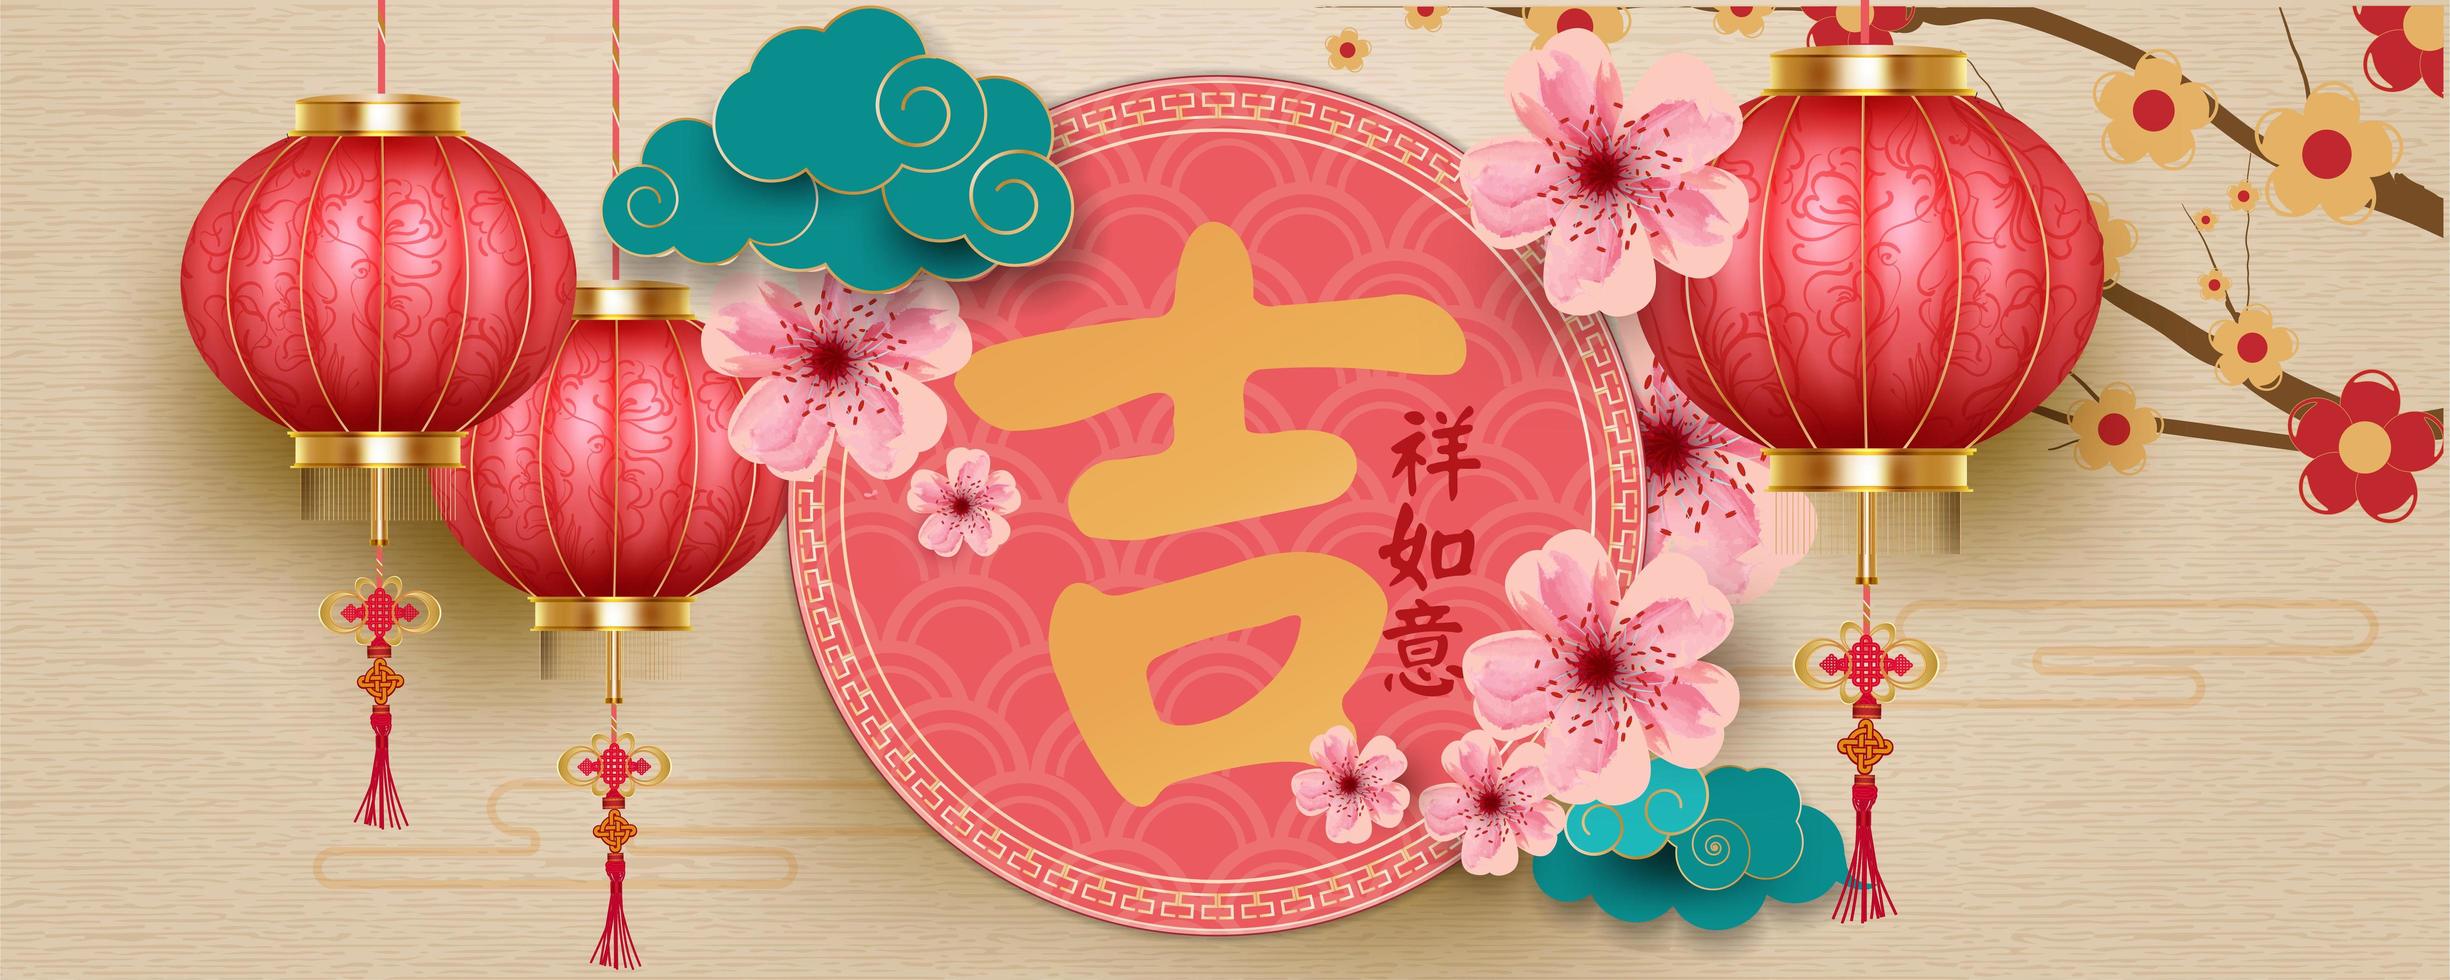 Kinesisk bakgrund för nytt år med lyktor, blommor och moln vektor